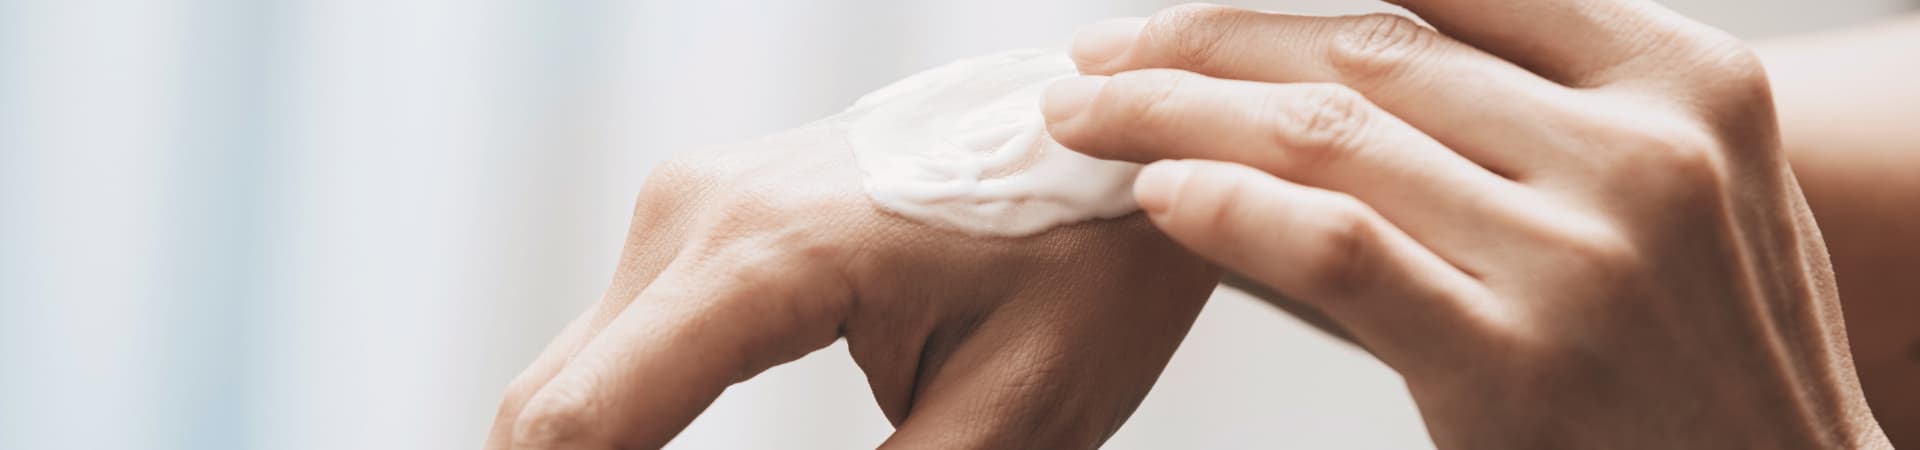 Come salvaguardare la pelle delle mani in seguito ai lavaggi frequenti